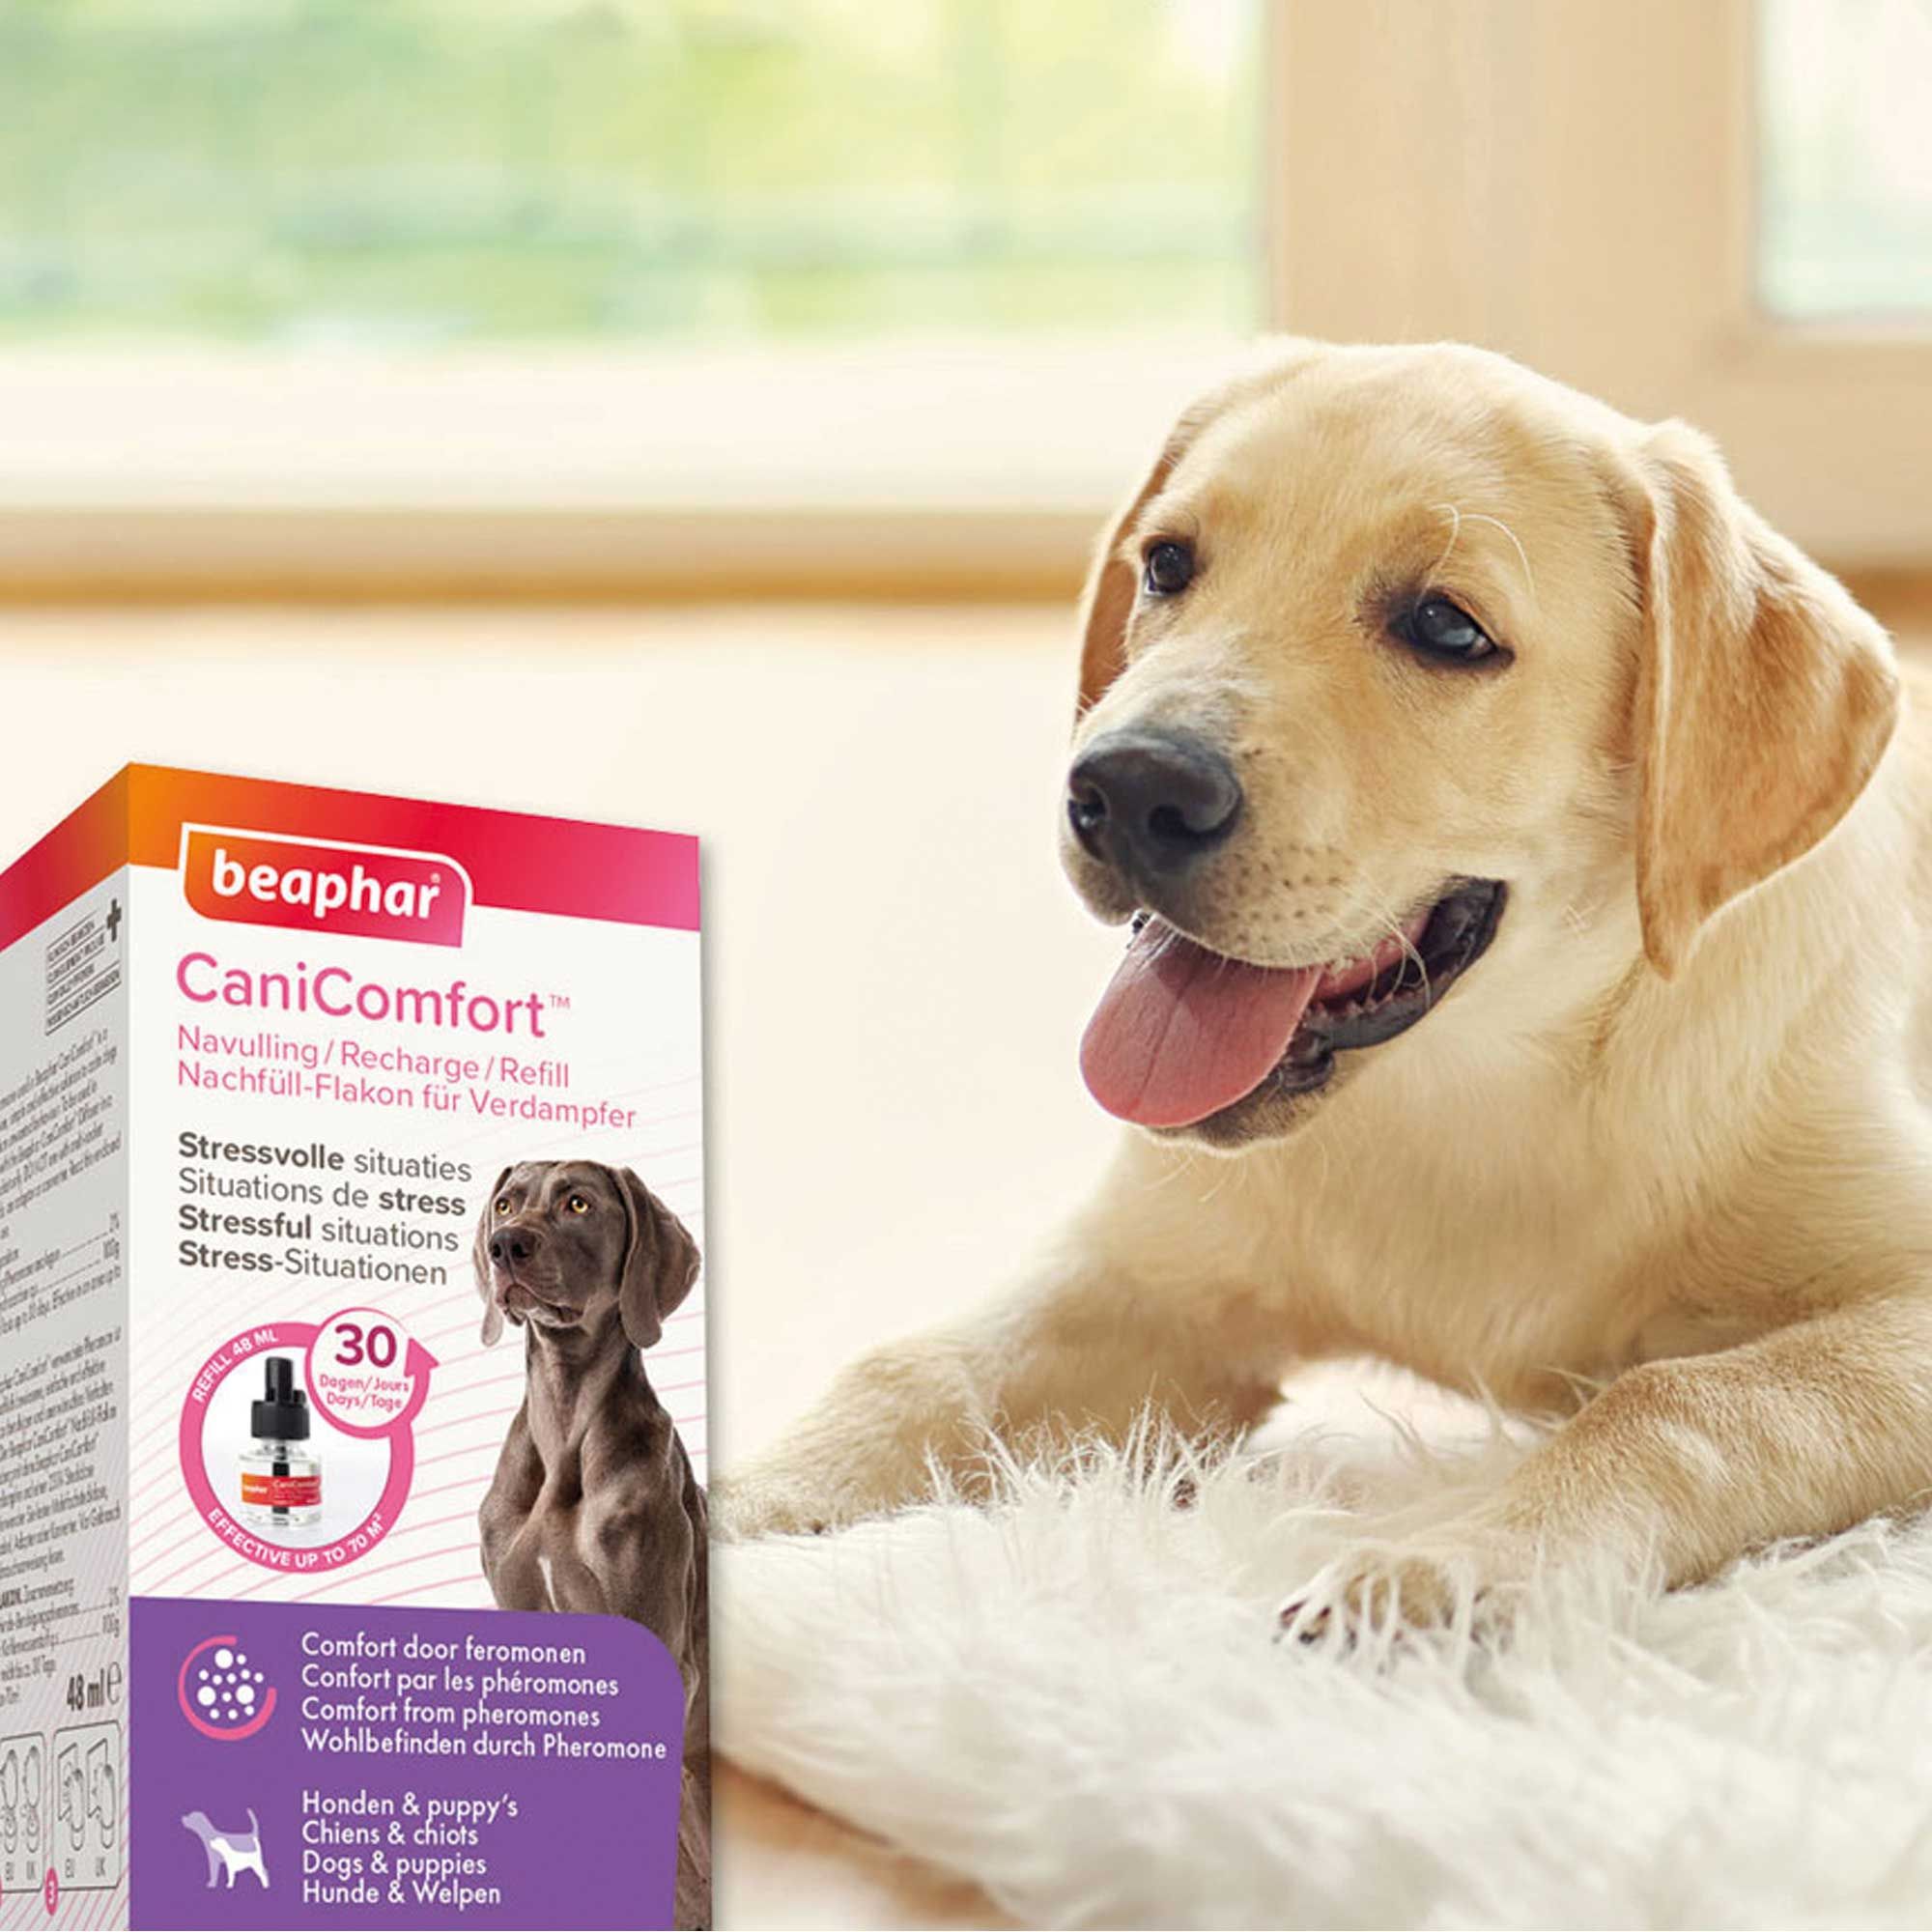 Beaphar CaniComfort Nachfüll Flakon für Verdampfer - Beruhigungsmittel für Hunde mit Pheromonen